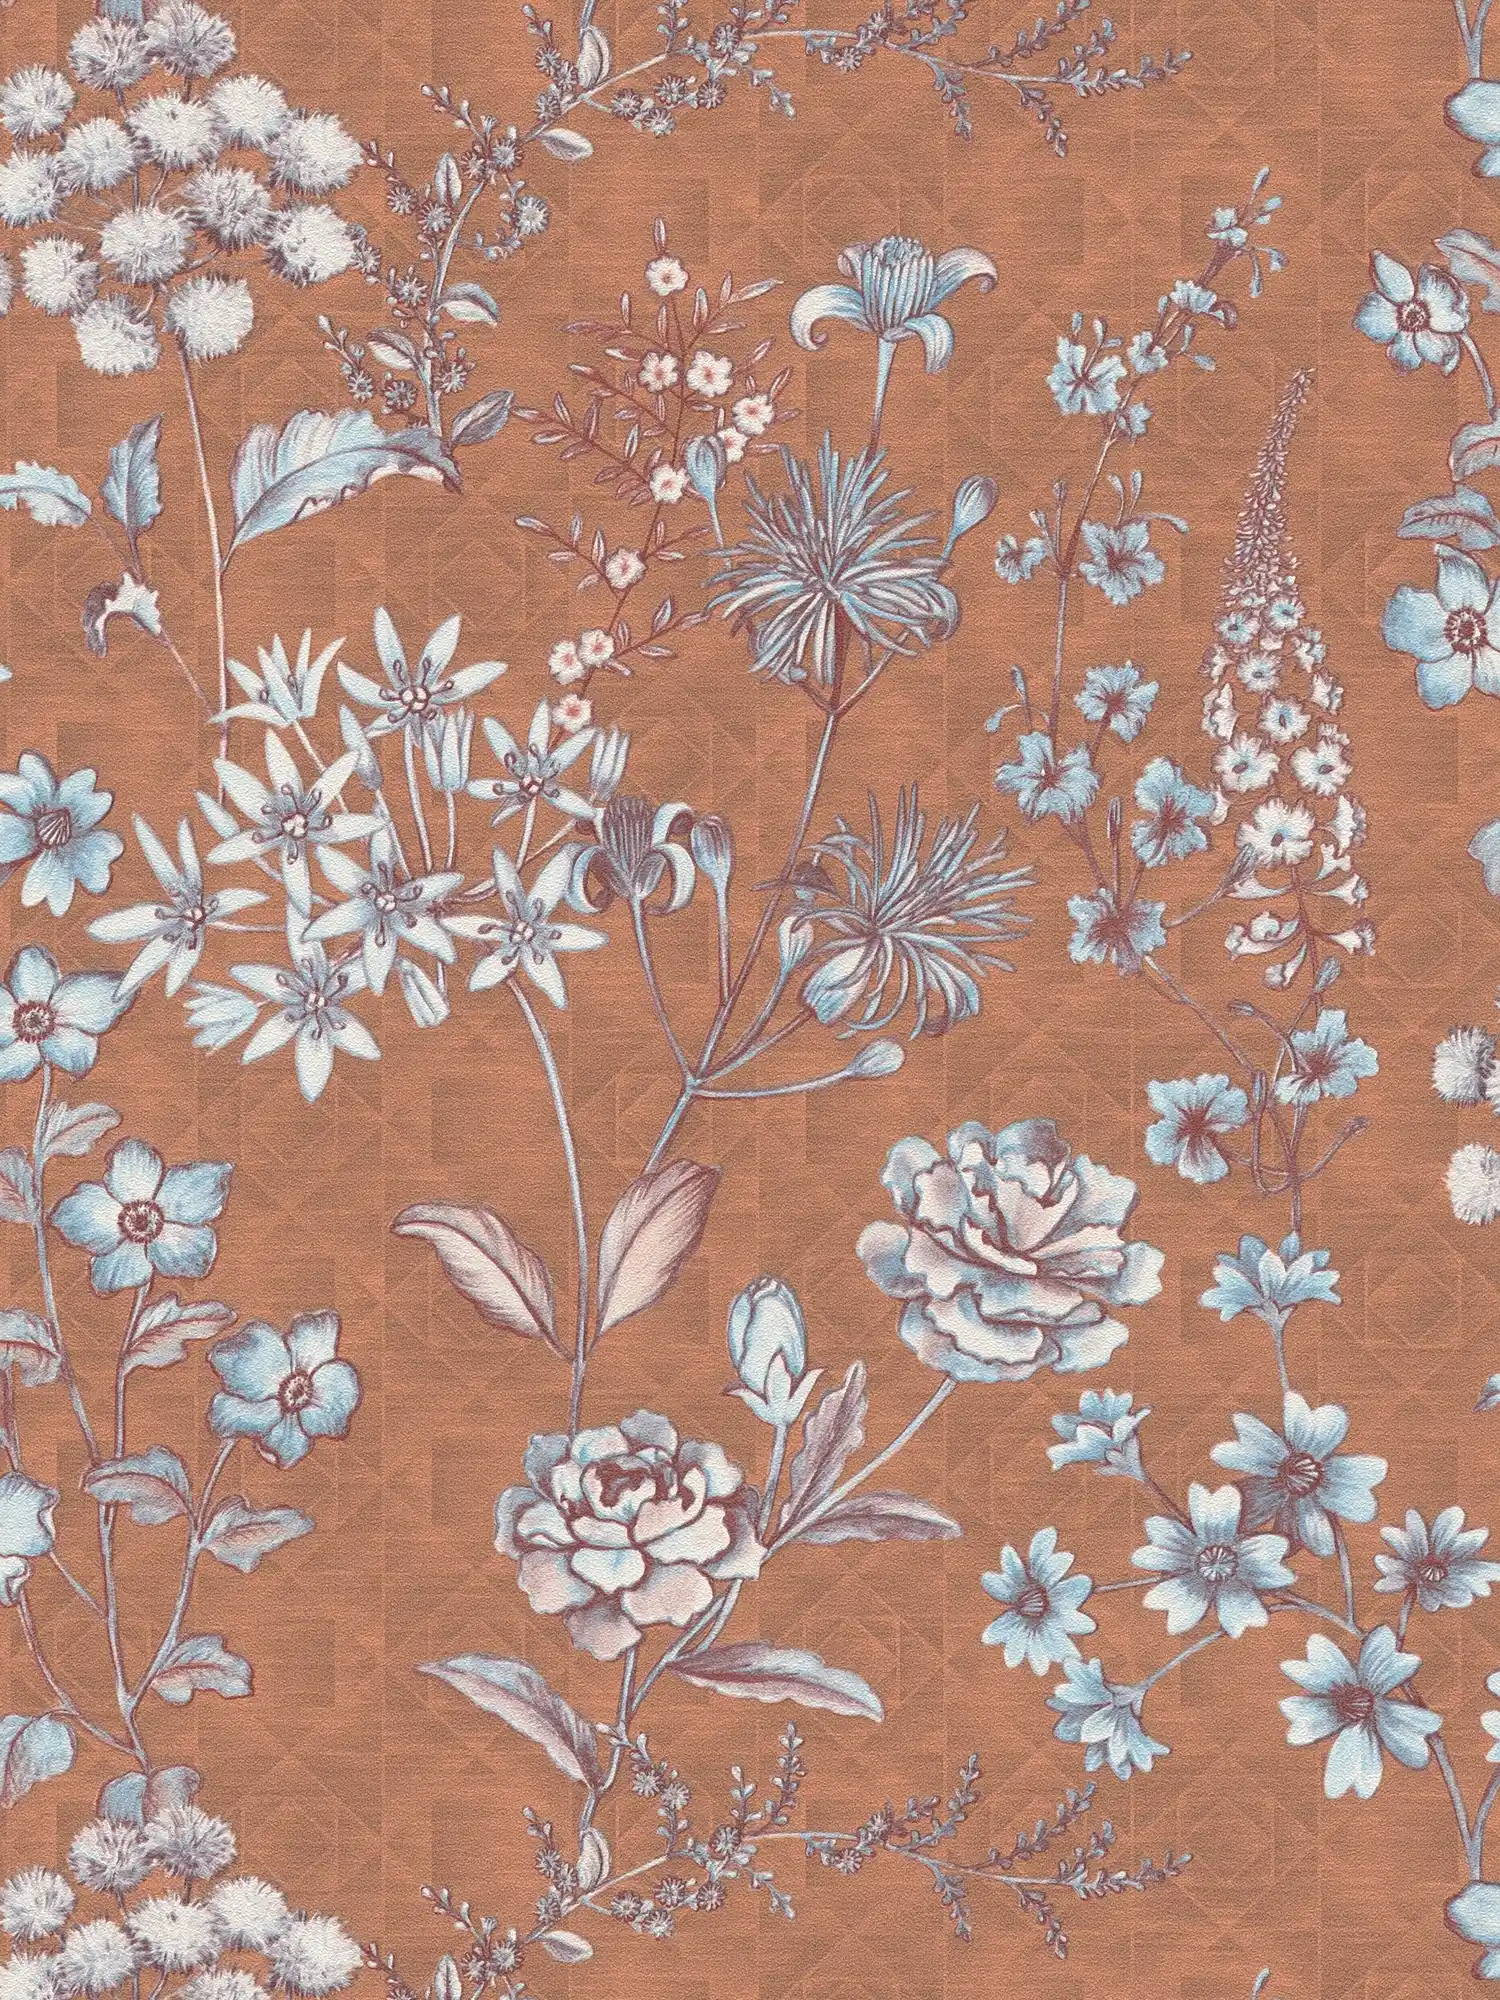 Vintage floral wallpaper with floral pattern - orange, brown, light blue
